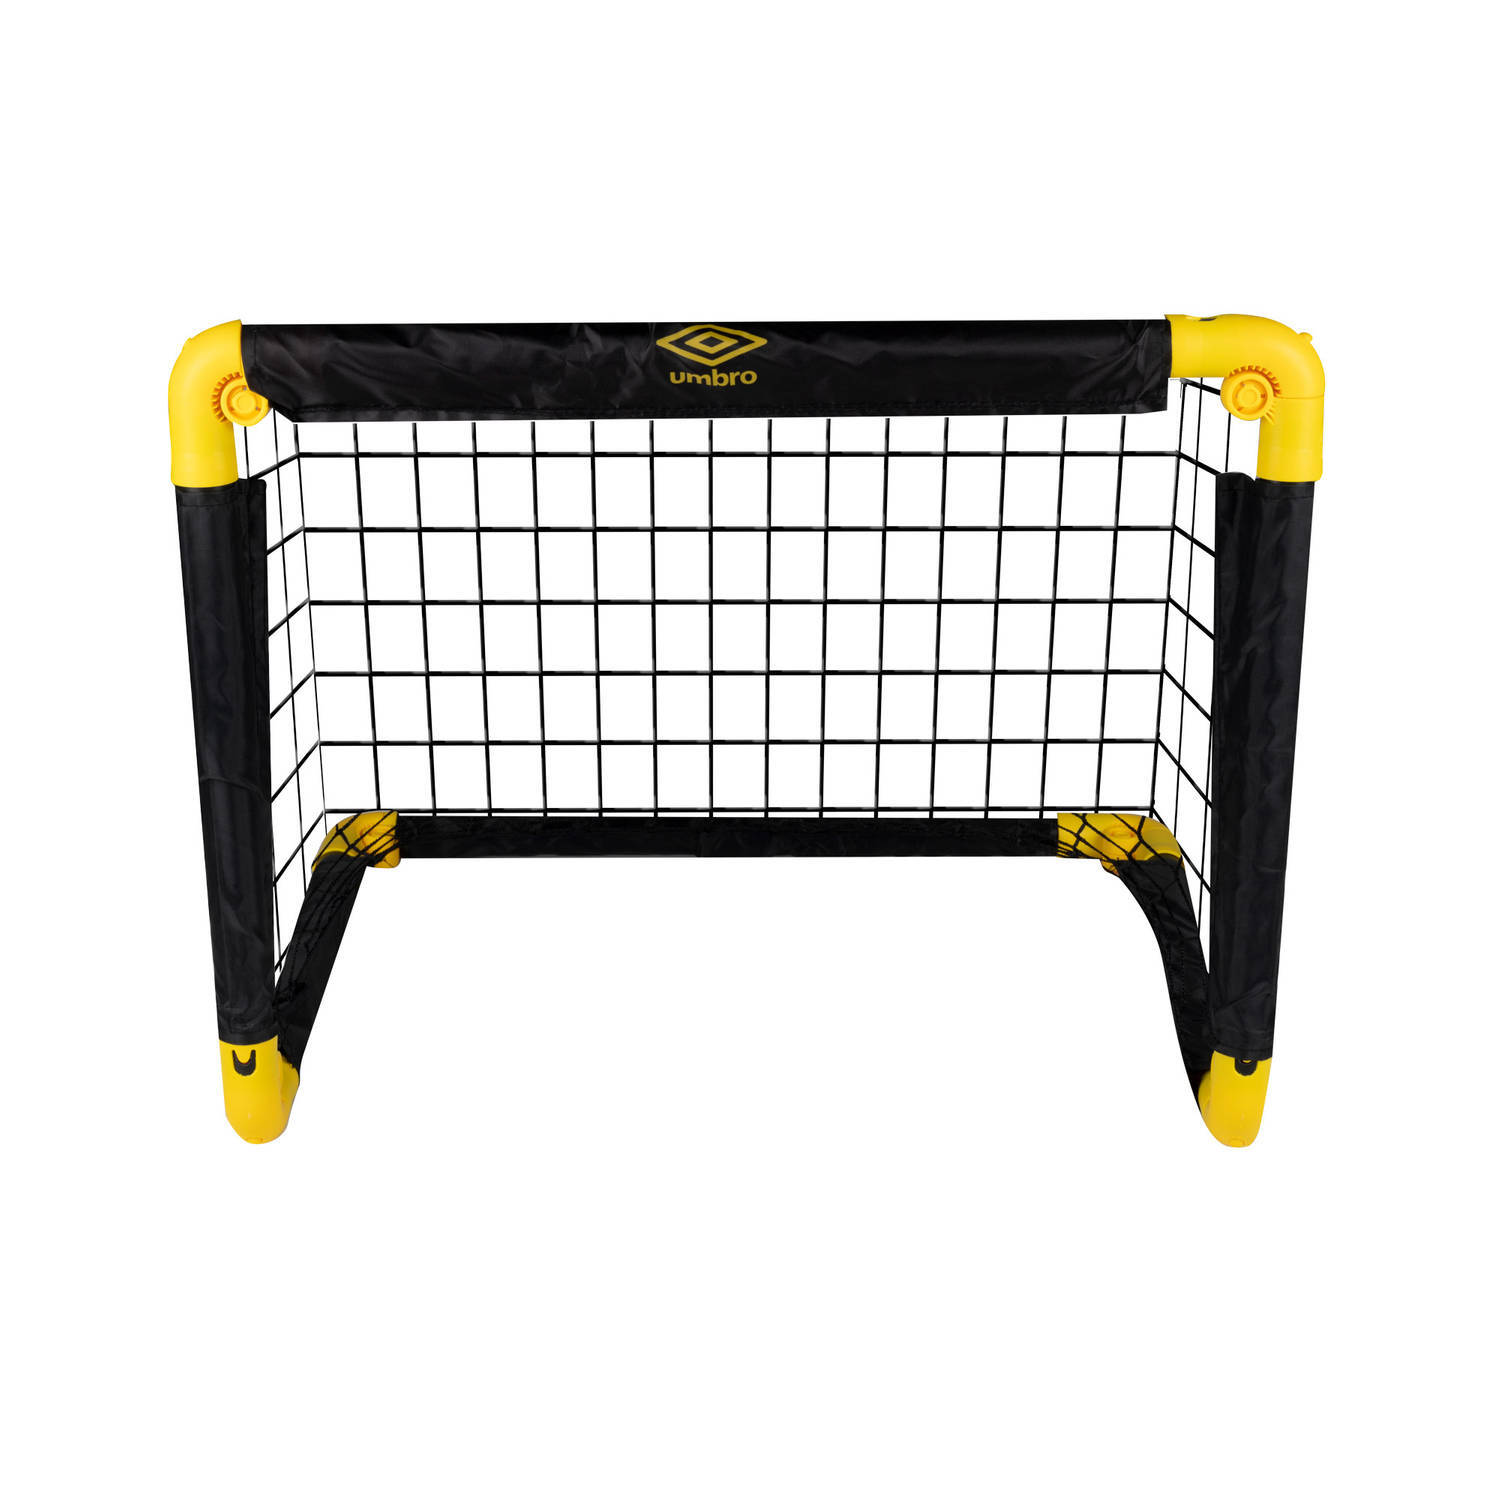 Umbro voetbaldoel - opvouwbare voetbalgoal - 50 x 44 x 44 cm - zwart/geel